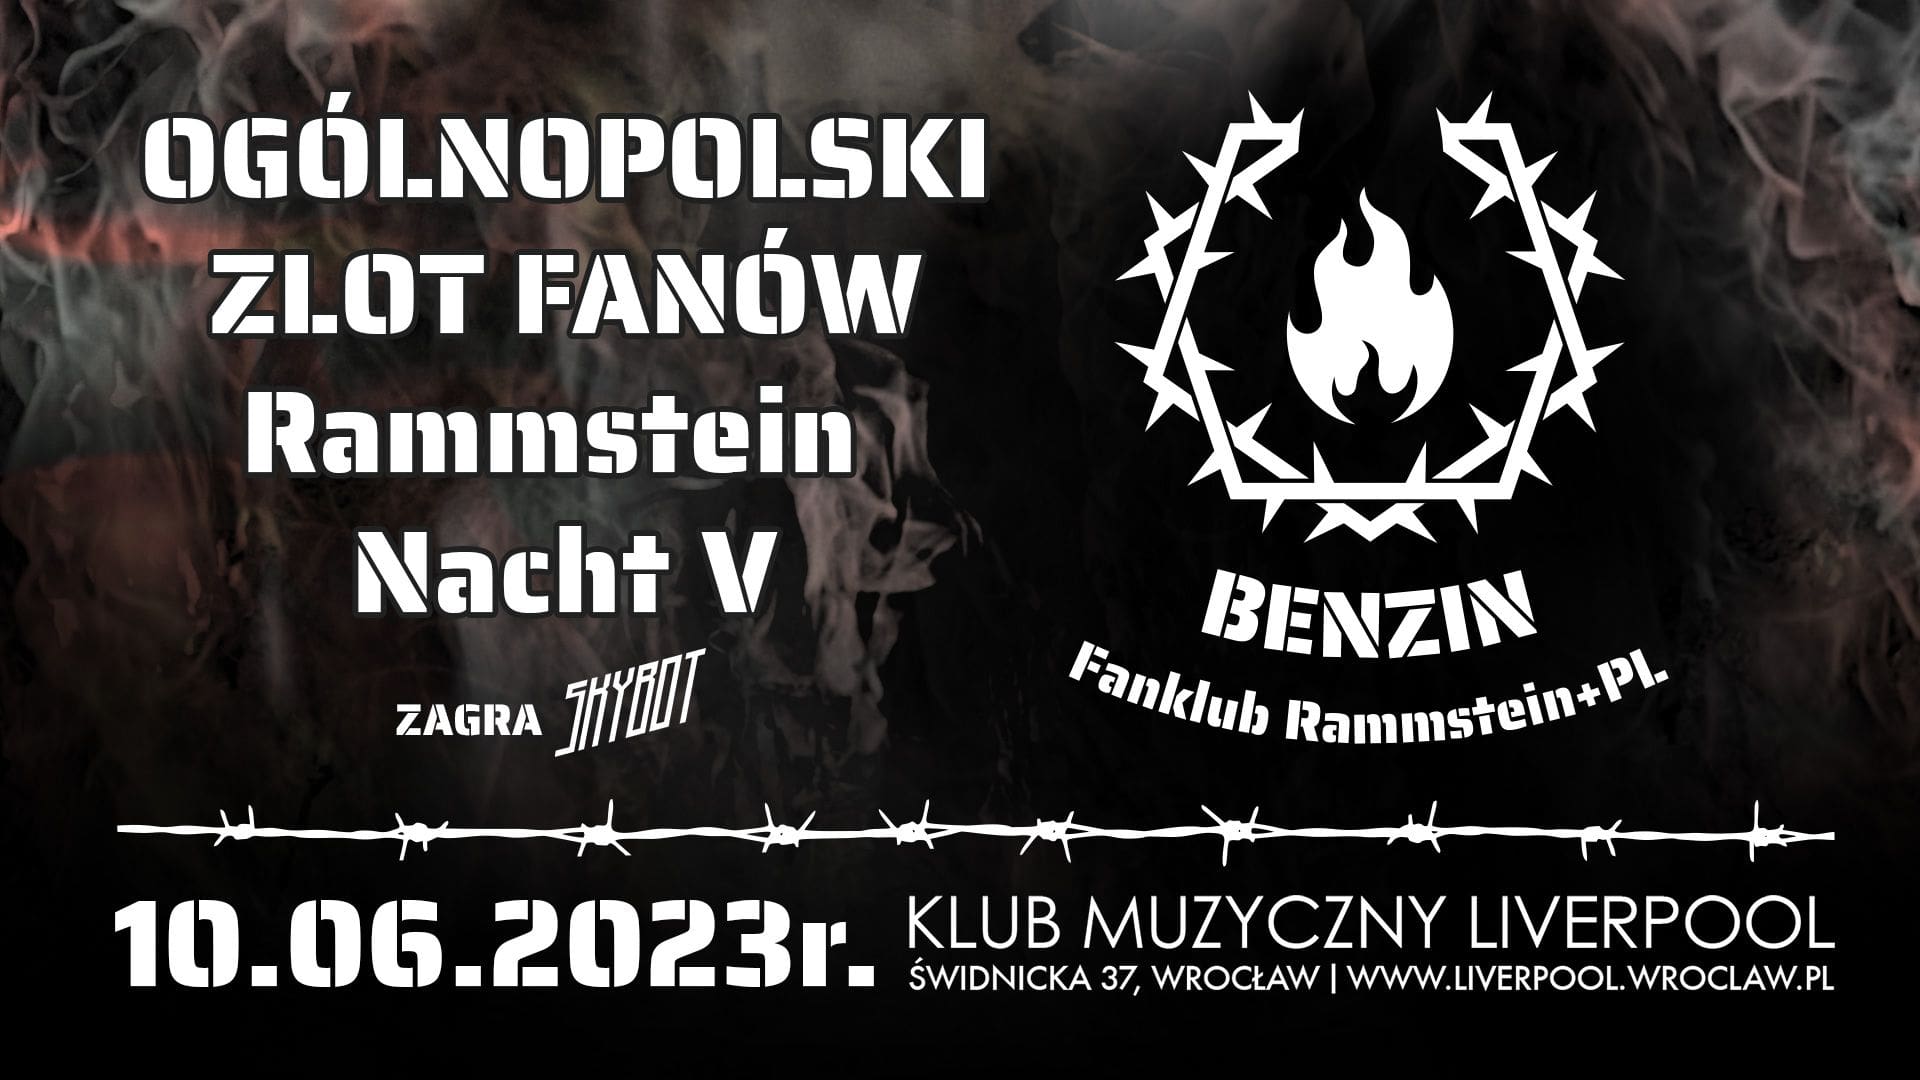 Rammstein Nacht V: ogólnopolski zlot fanów / Wrocław